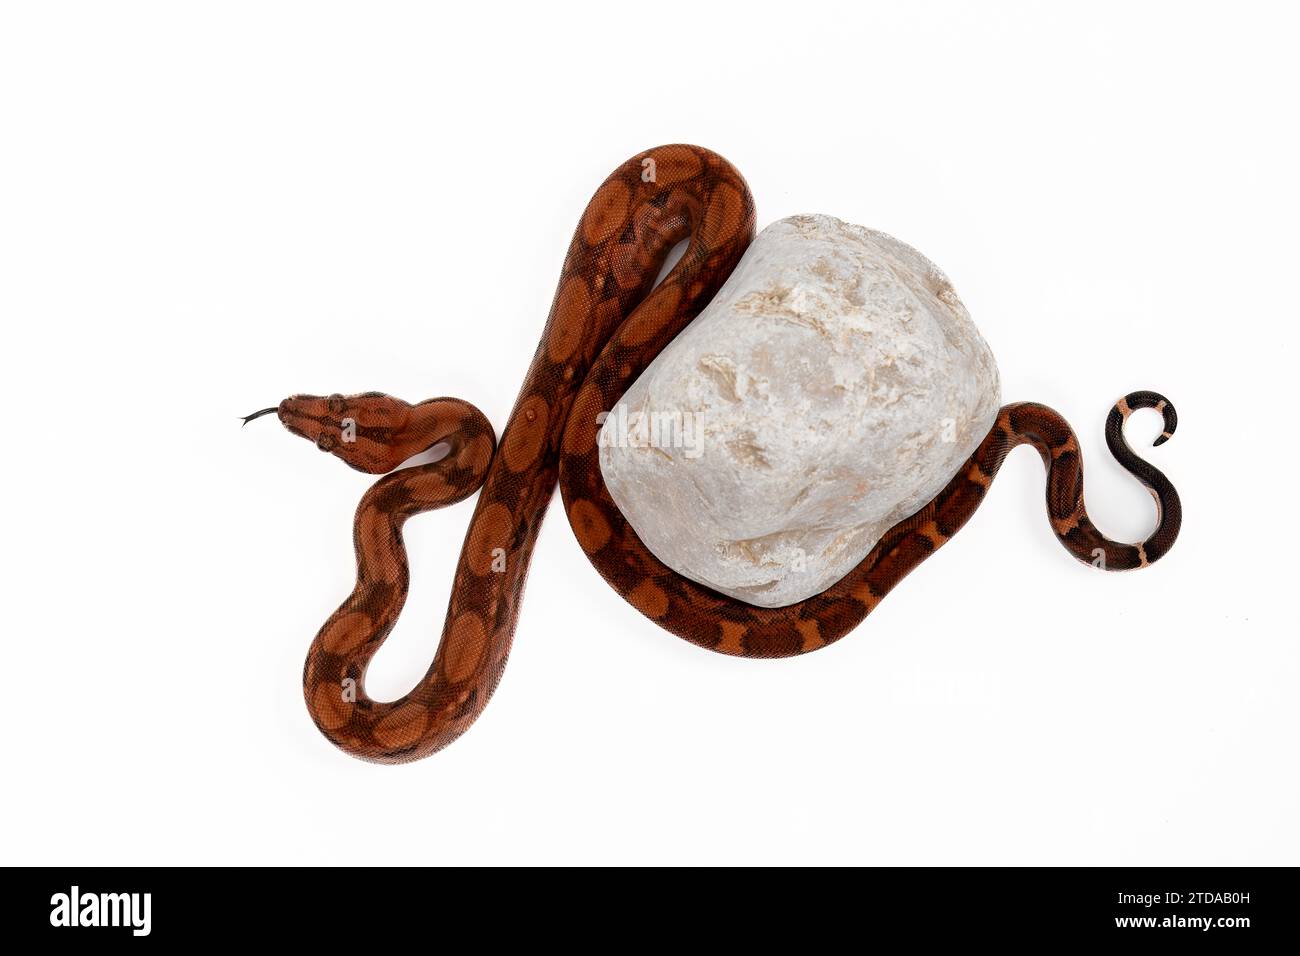 Baby Boa Constrictor mit Felsen - Nicaragua Blut Boa Imperator auf weißem Hintergrund - exotische Reptilien Wildlife Stock Photo Stockfoto